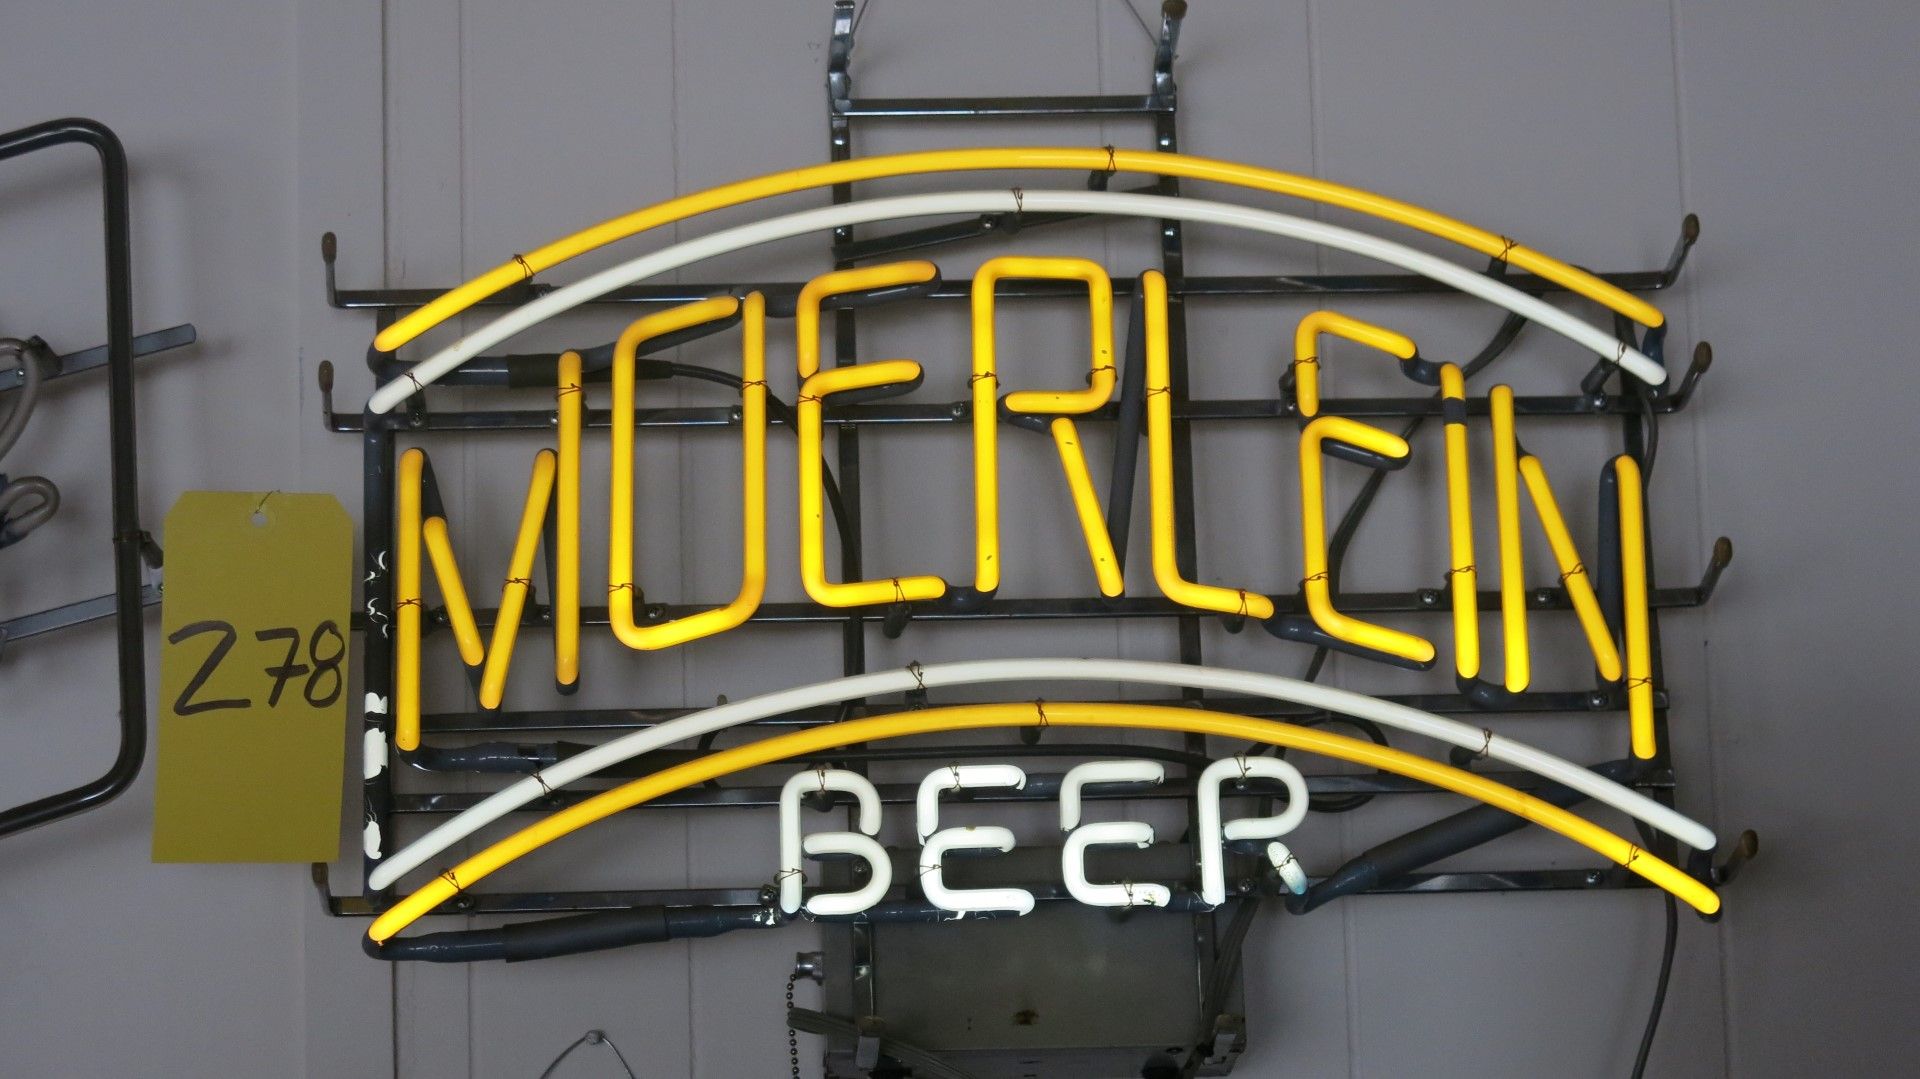 Muerlein Beer  Sign